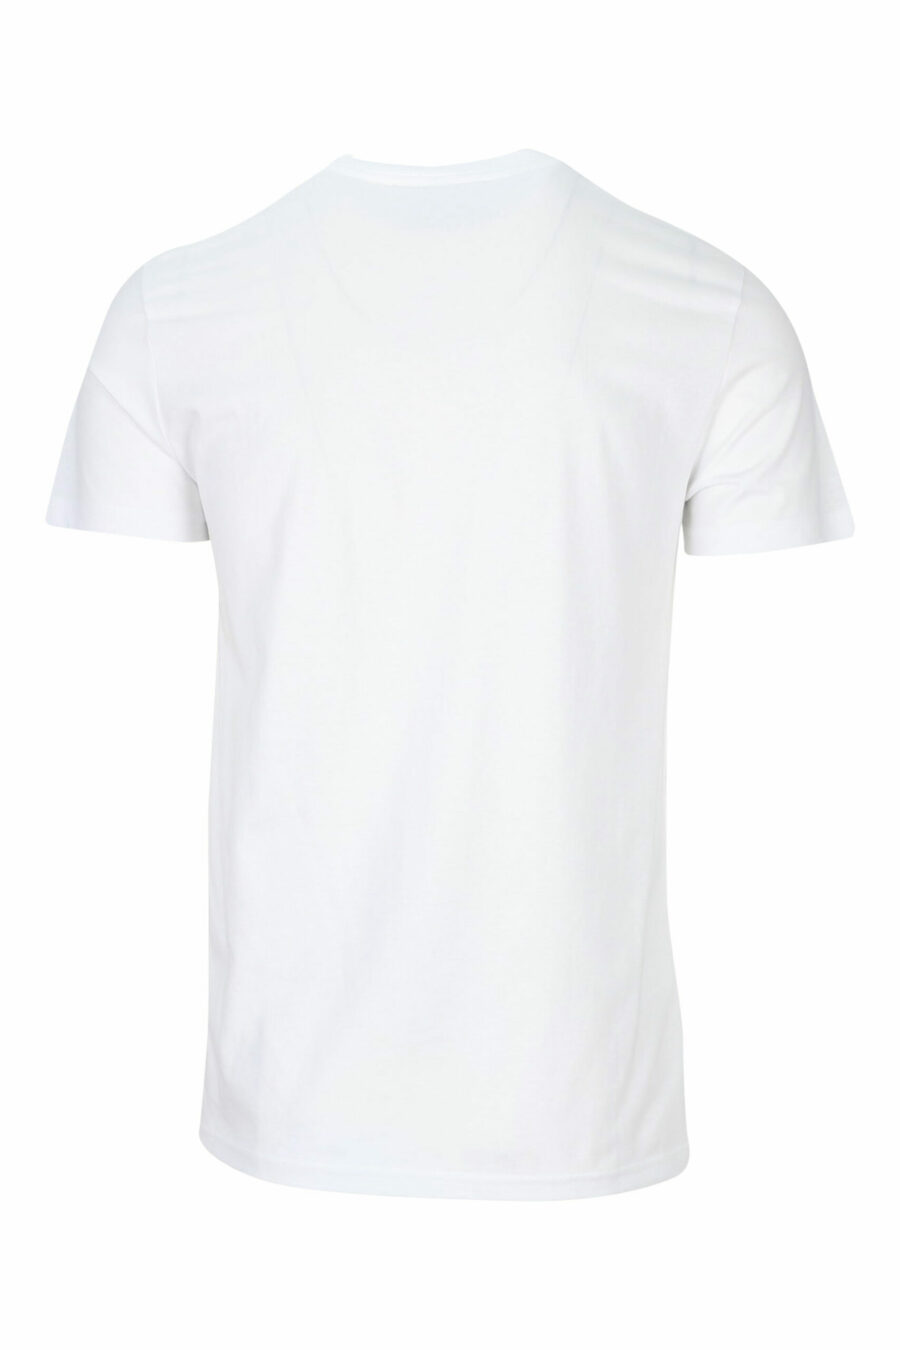 Weißes T-Shirt mit glänzendem Gold klassischen maxilogue - 8052019456738 1 skaliert